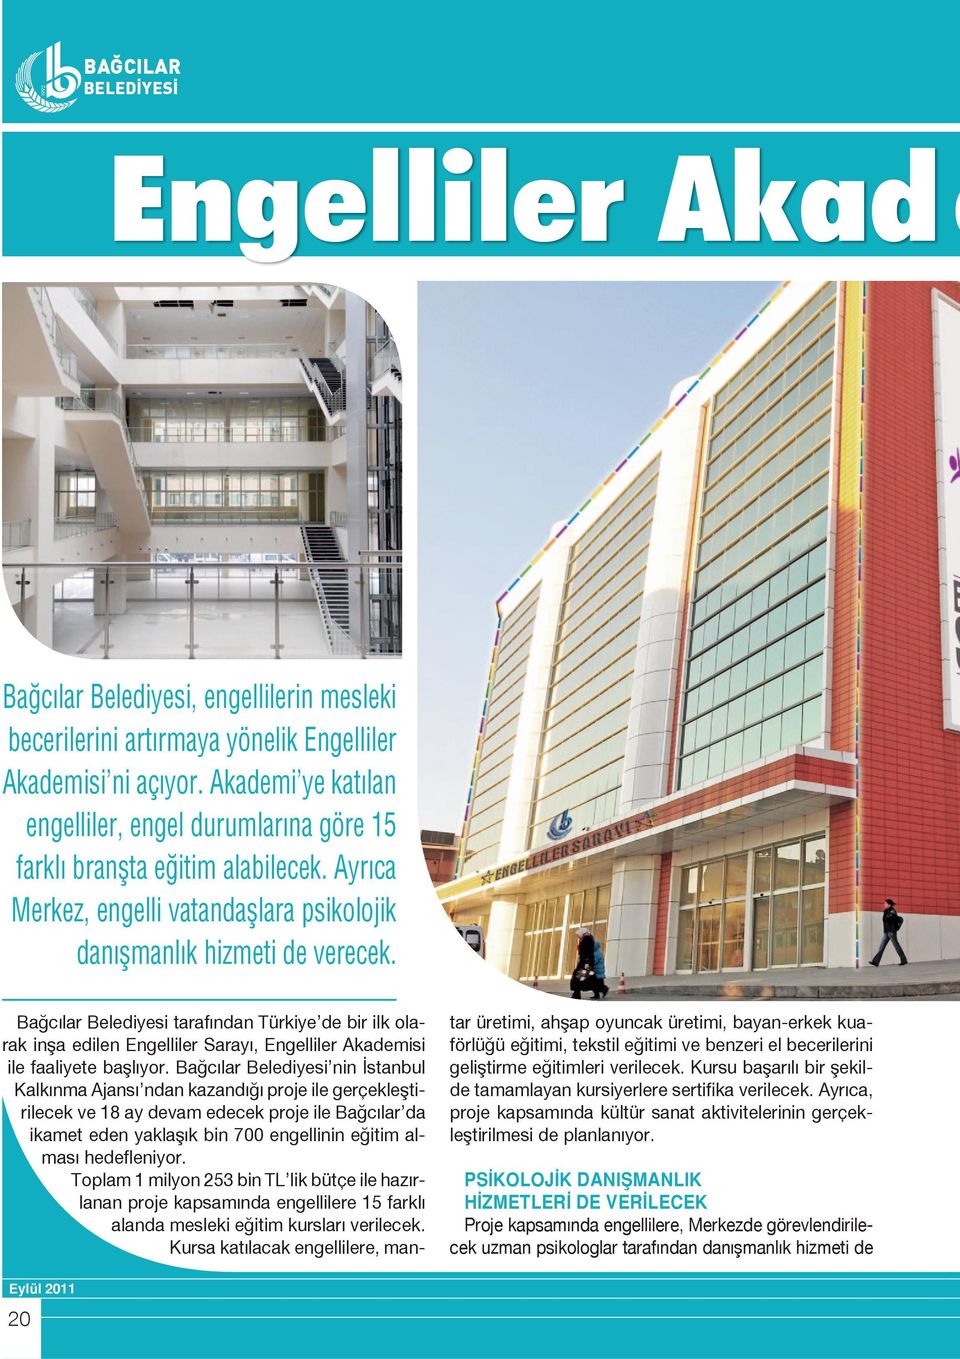 Bağcılar Belediyesi tarafından Türkiye de bir ilk olarak inşa edilen Engelliler Sarayı, Engelliler Akademisi ile faaliyete başlıyor.